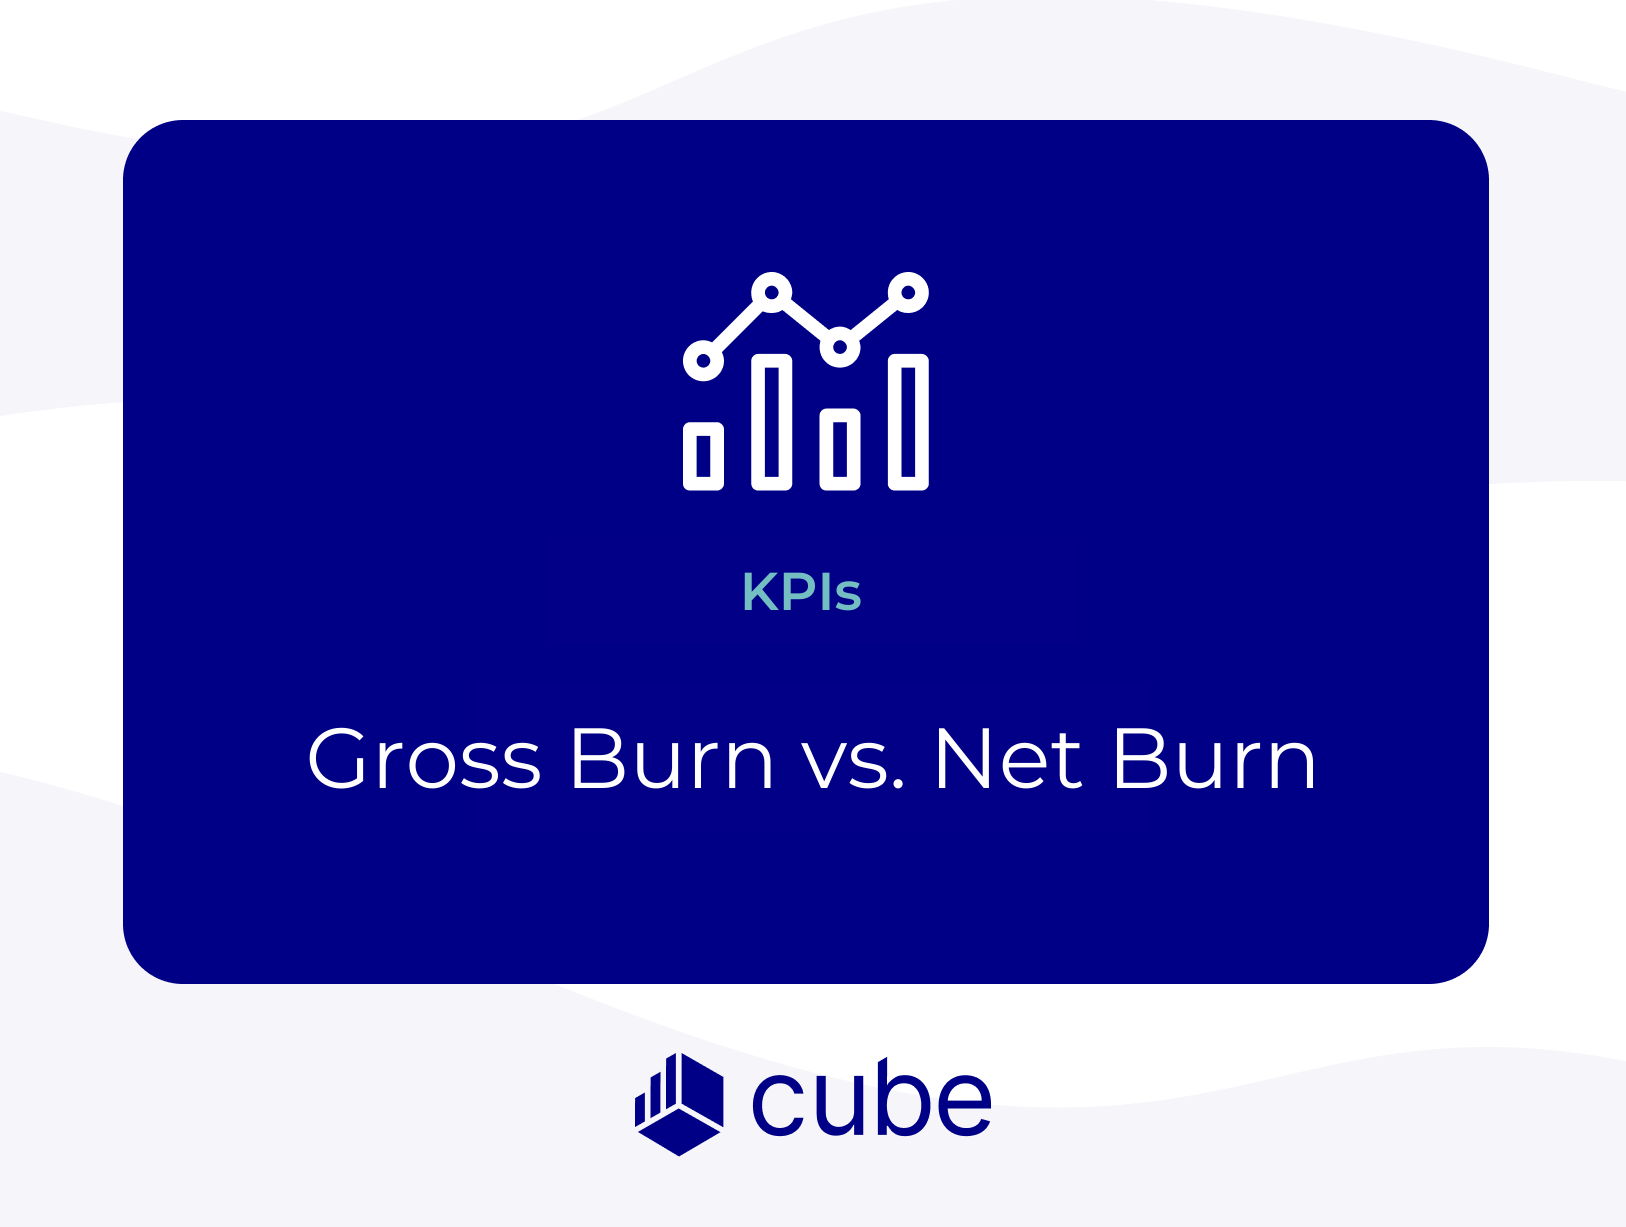 Feel the Burn: A Guide to Gross Burn vs. Net Burn